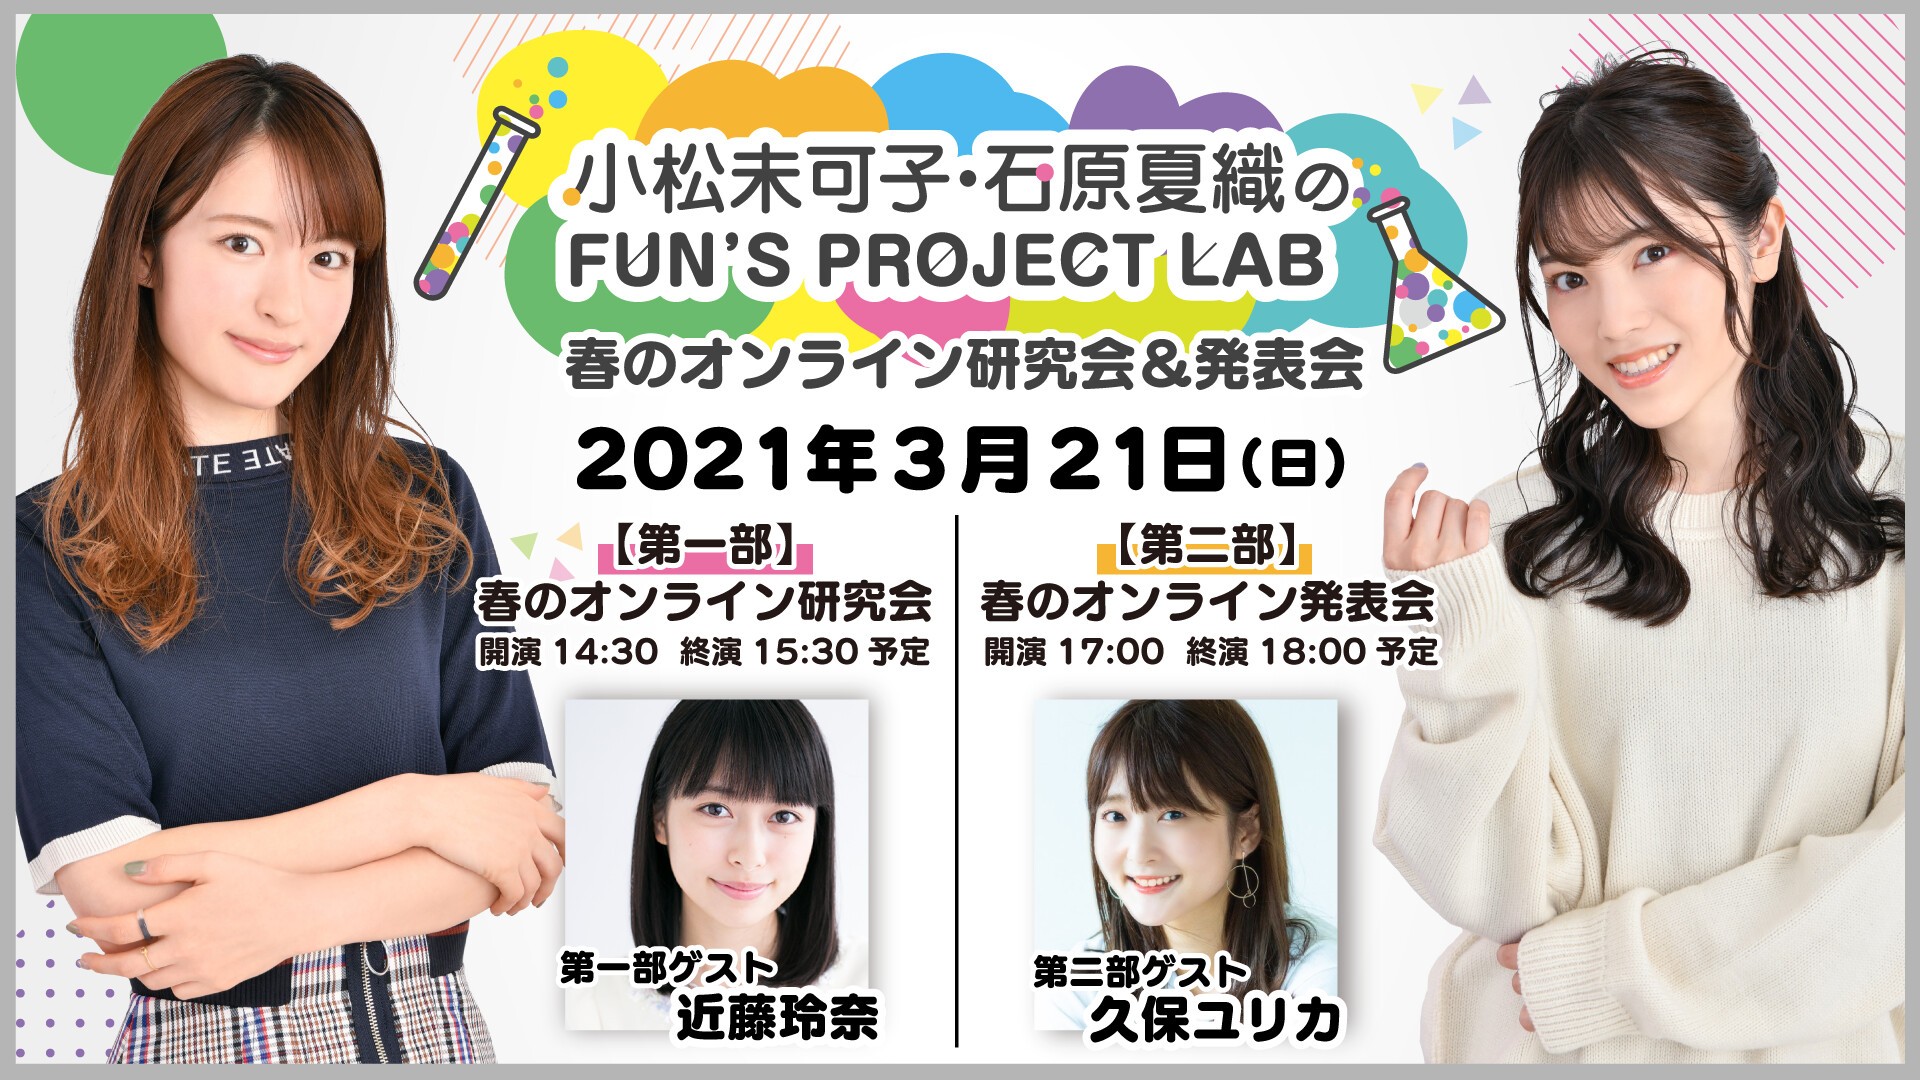 小松未可子 石原夏織のfun S Project Lab 春のオンライン研究会 発表会 Zaiko